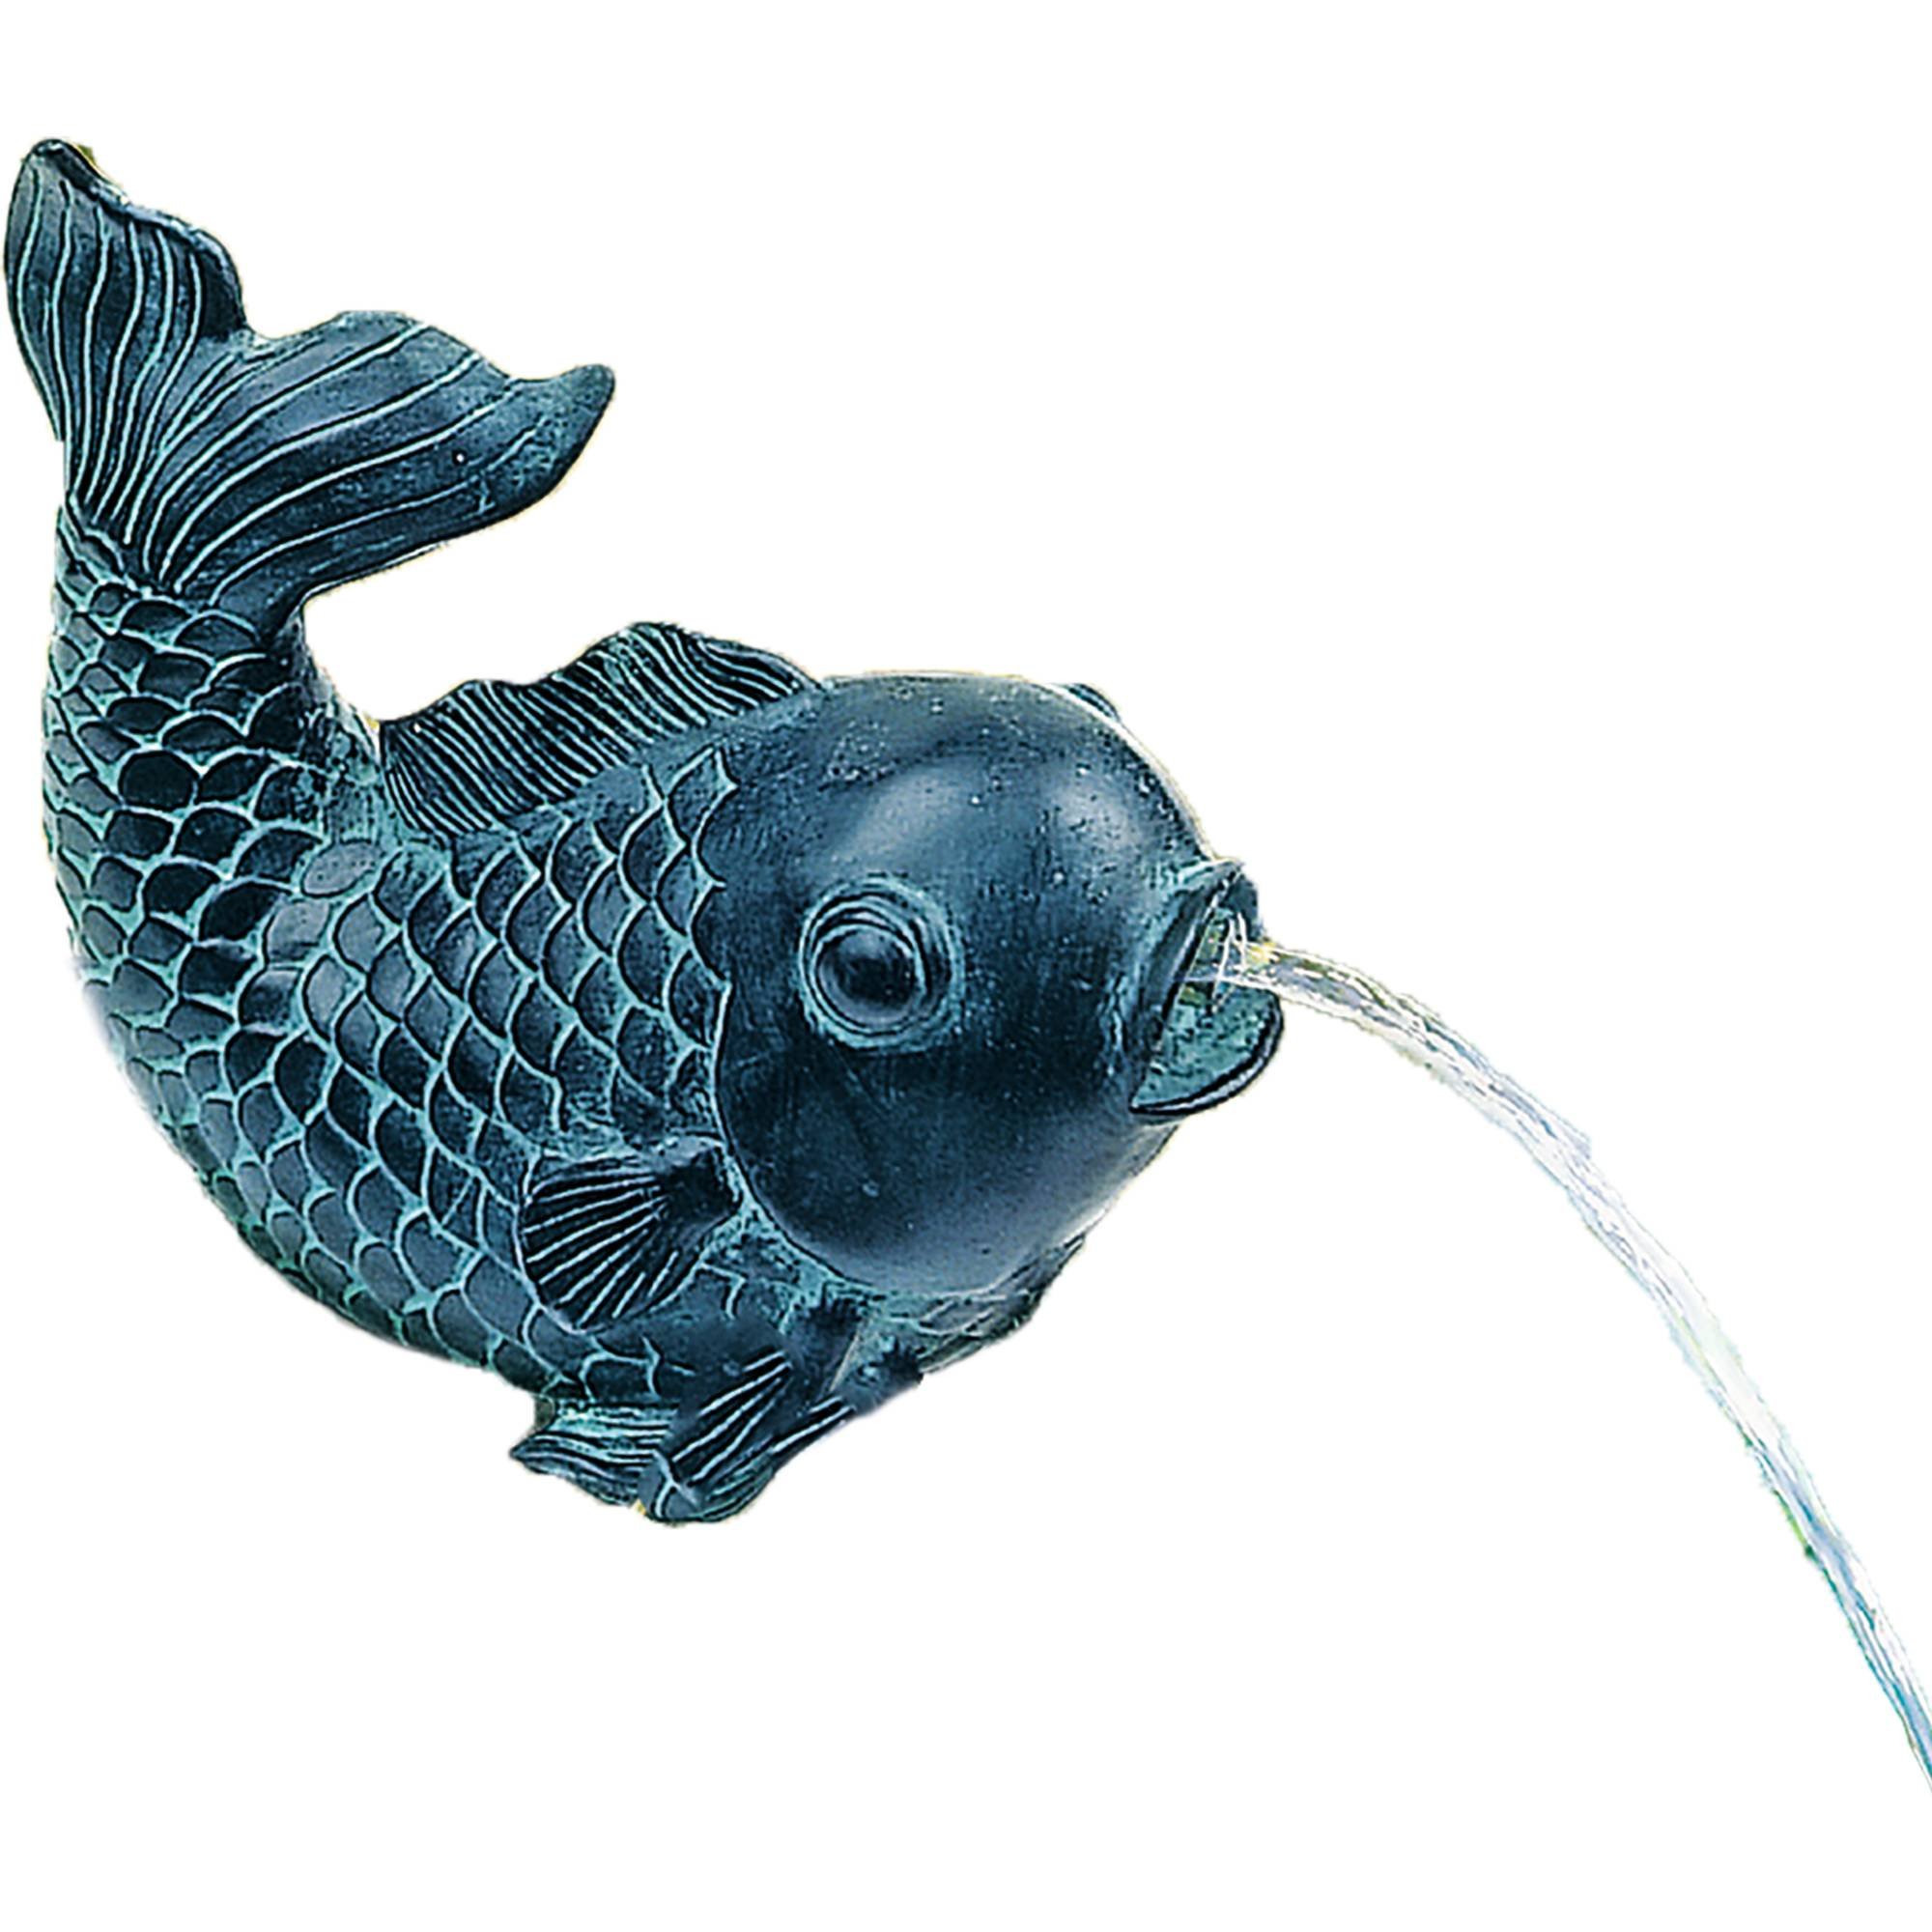 Teichfigur Speier  Fisch  Dekor Bronze